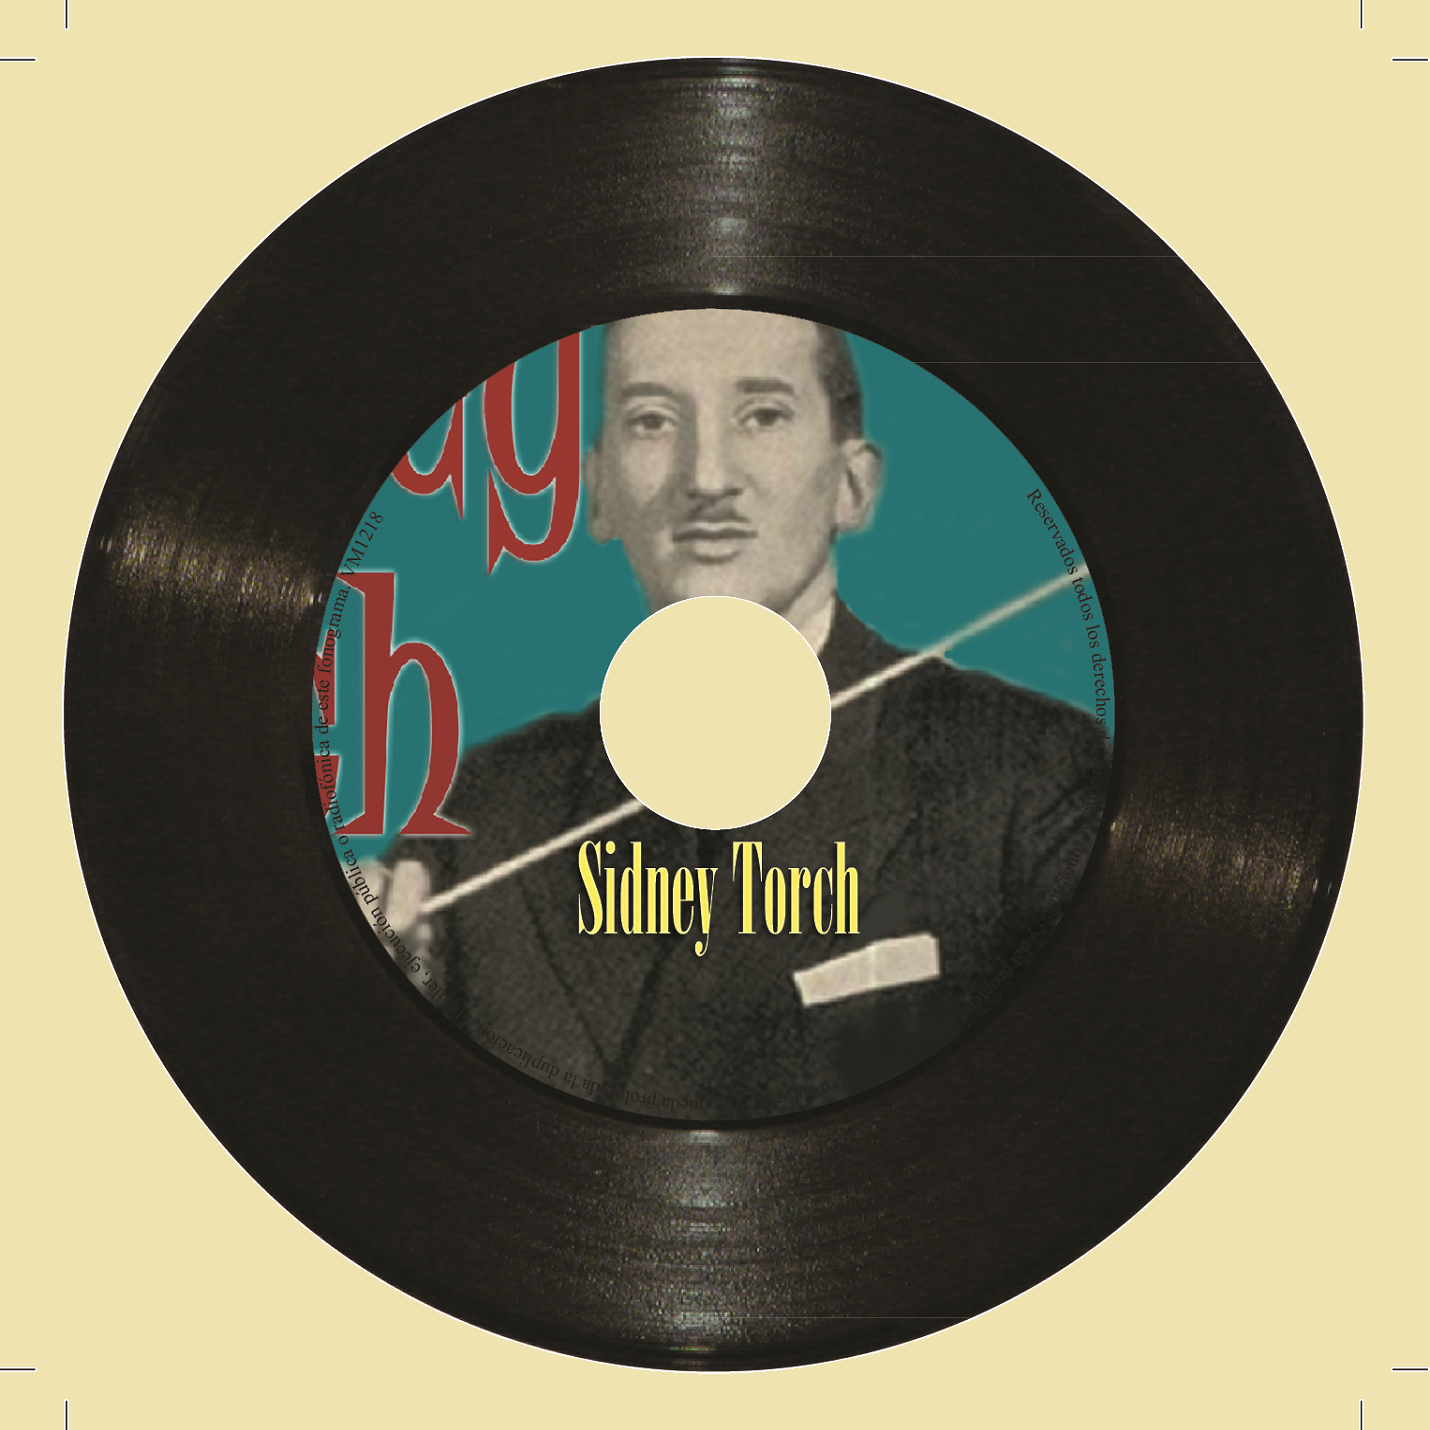 Sidney Torch (Colección Vintage Music)